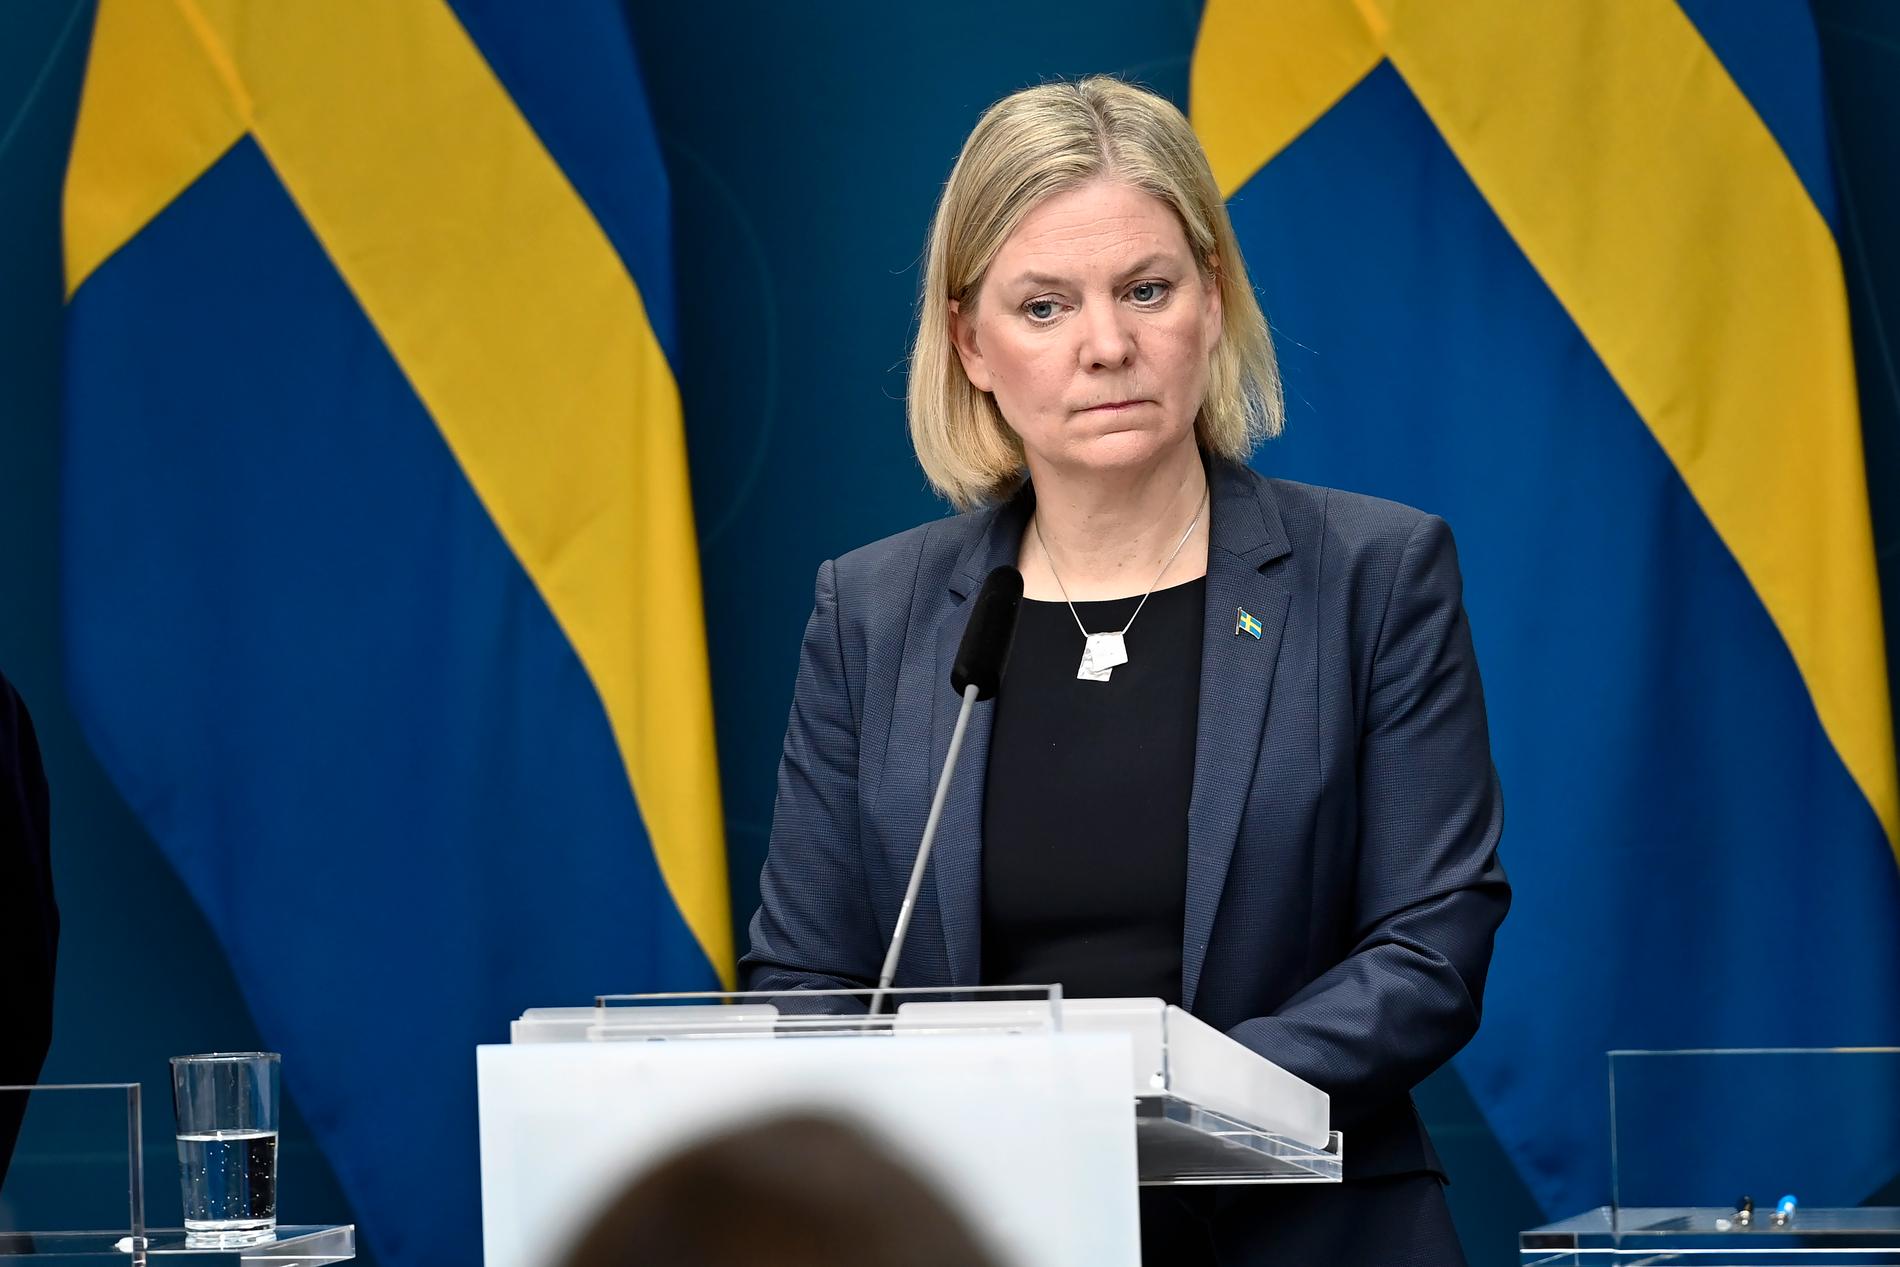 ”Alla frågor avgörs inte nödvändigtvis bäst i en folkomröstning”, som statsminister Magdalena Andersson uttryckte saken.